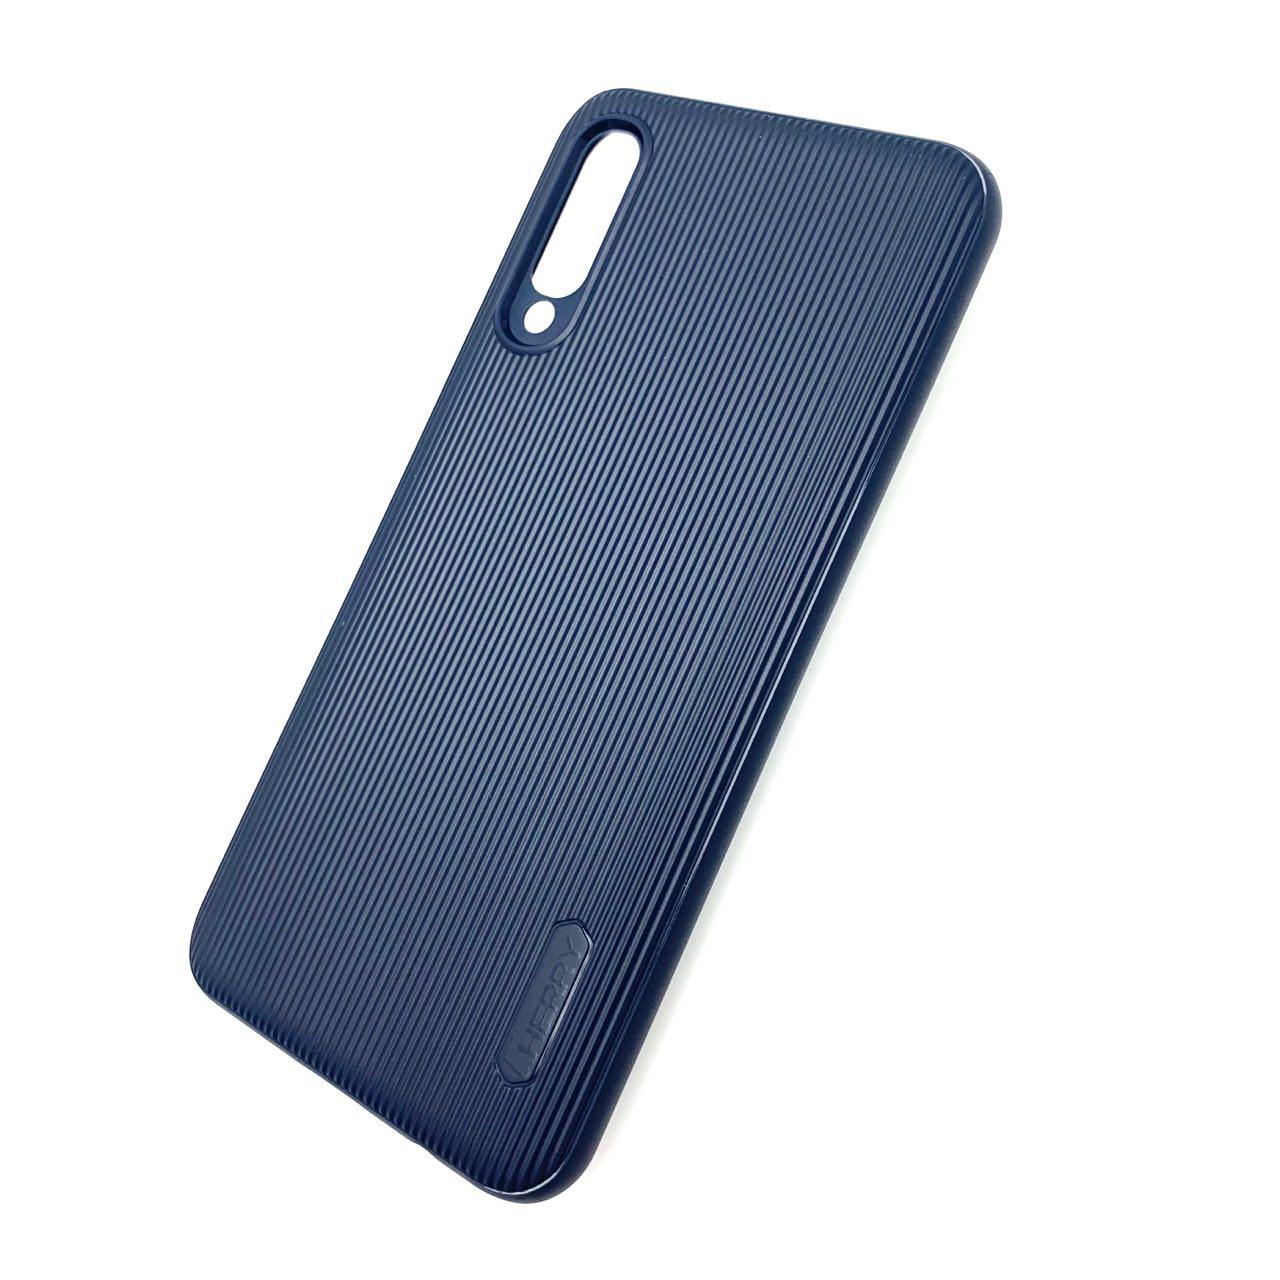 Чехол накладка Cherry для SAMSUNG Galaxy A50 (SM-A505), A30s (SM-A307), A50s (SM-A507), силикон, полоски, цвет синий.